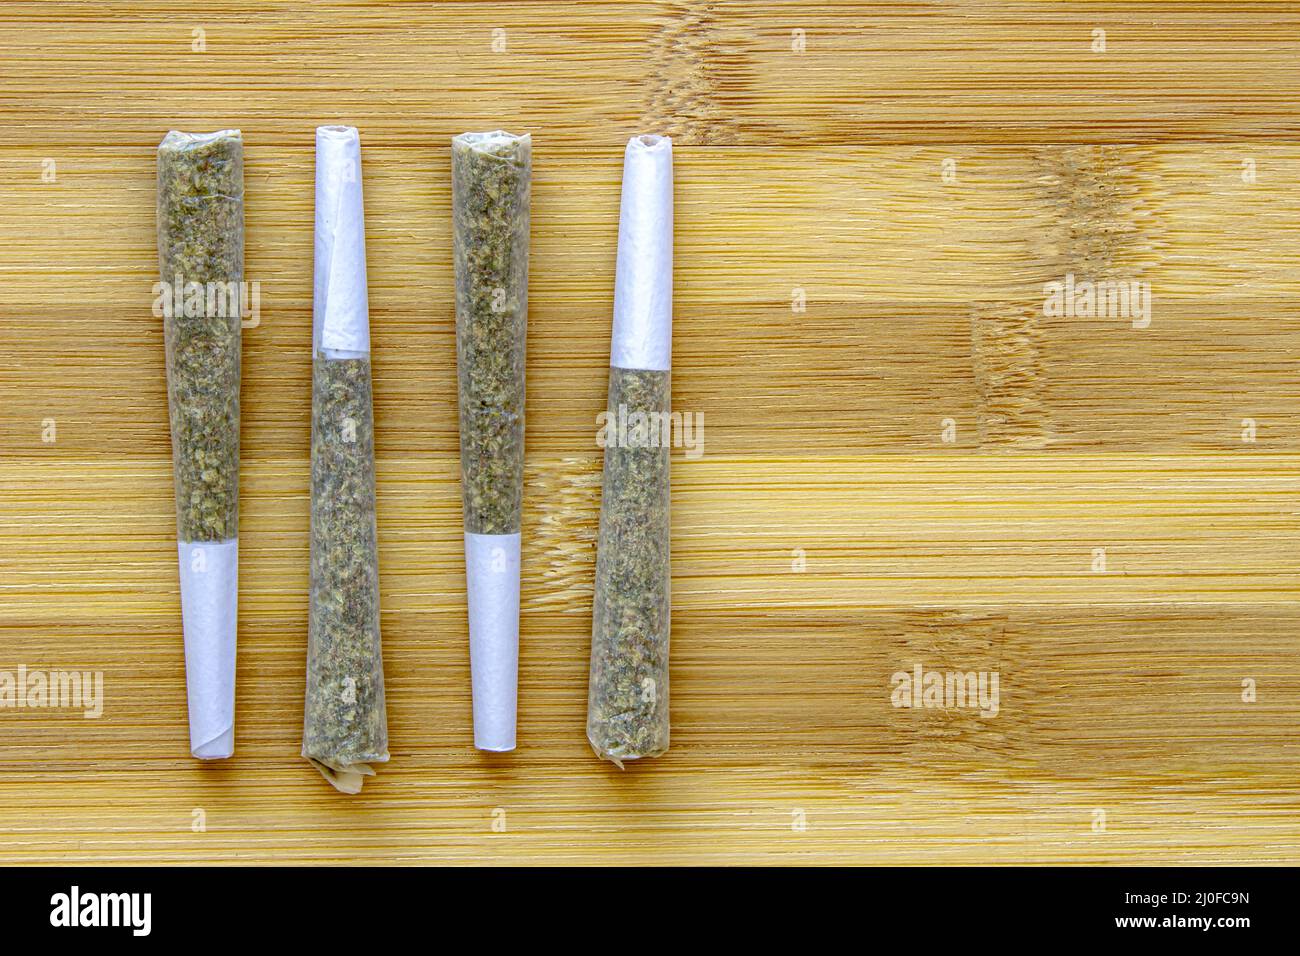 Diversi giunti Legal Canadian Pre-Rolls Cannabis su una superficie di legno. Foto Stock